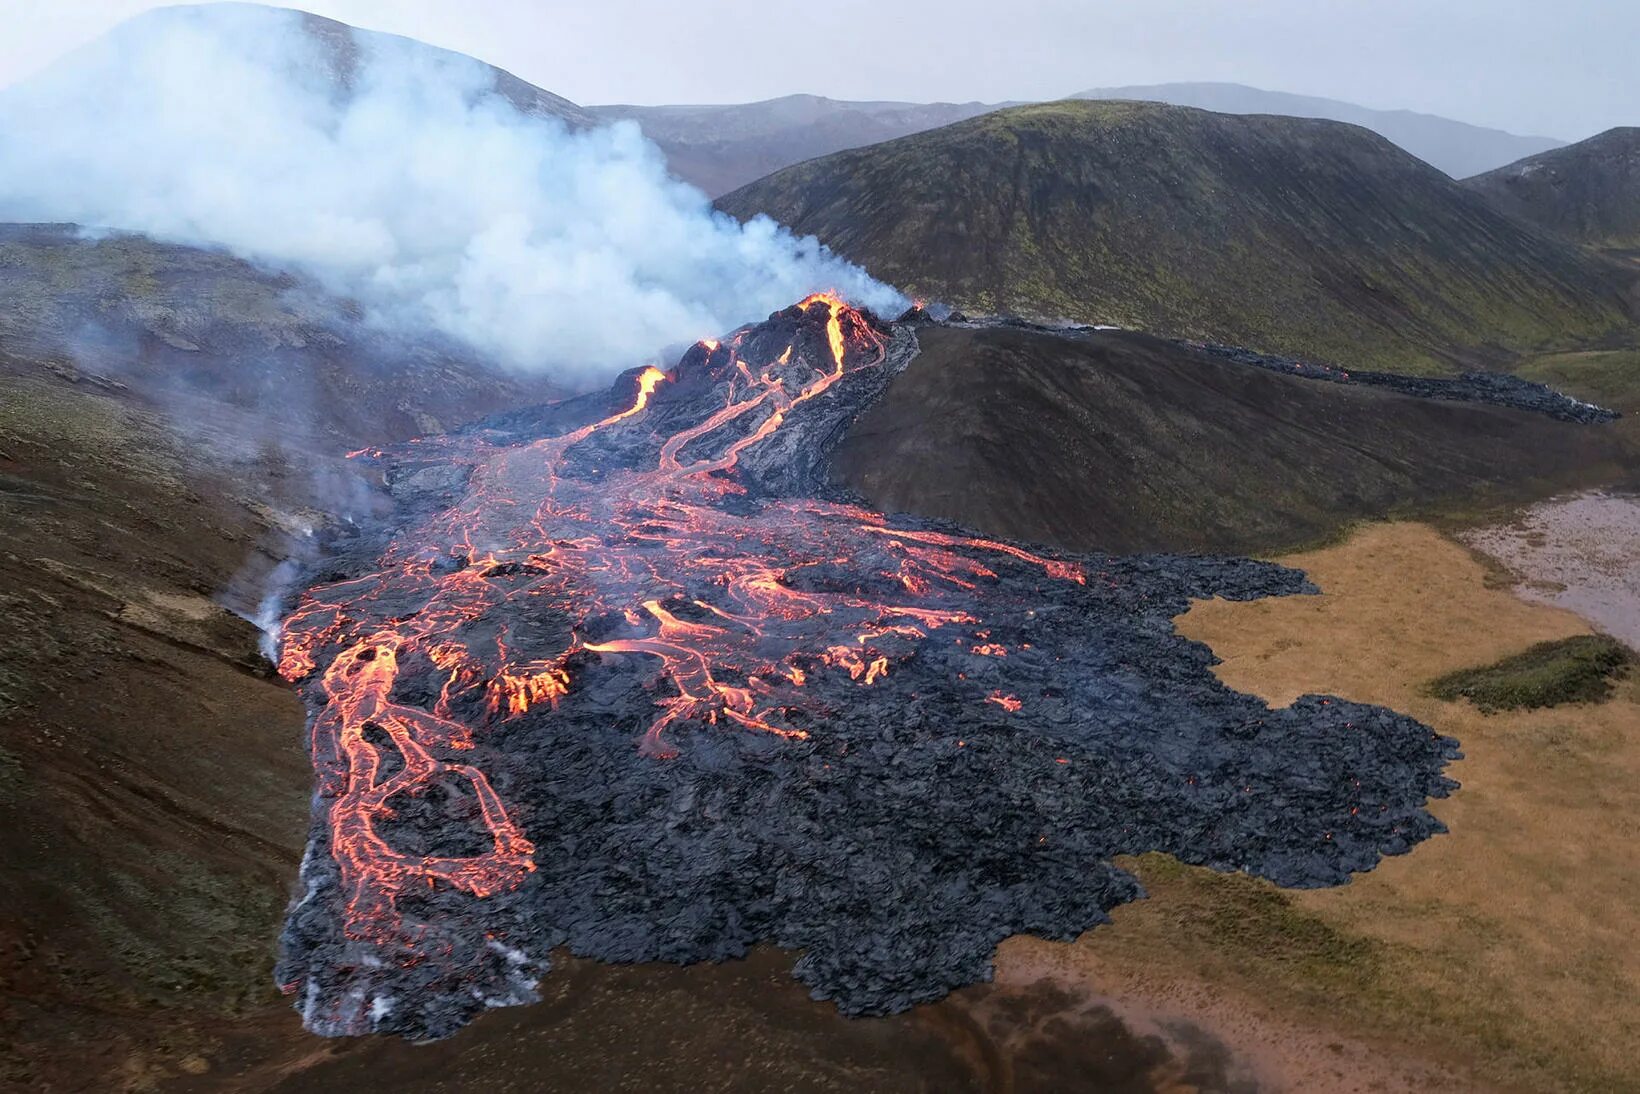 Исландия вулкан Эйяфьятлайокудль извержение 2010. Извержение вулкана в Исландии 2021. Вулкан в Исландии фаградальсфьядль. Извержение вулкана эйяфьядлайёкюдль 2010 Исландия.